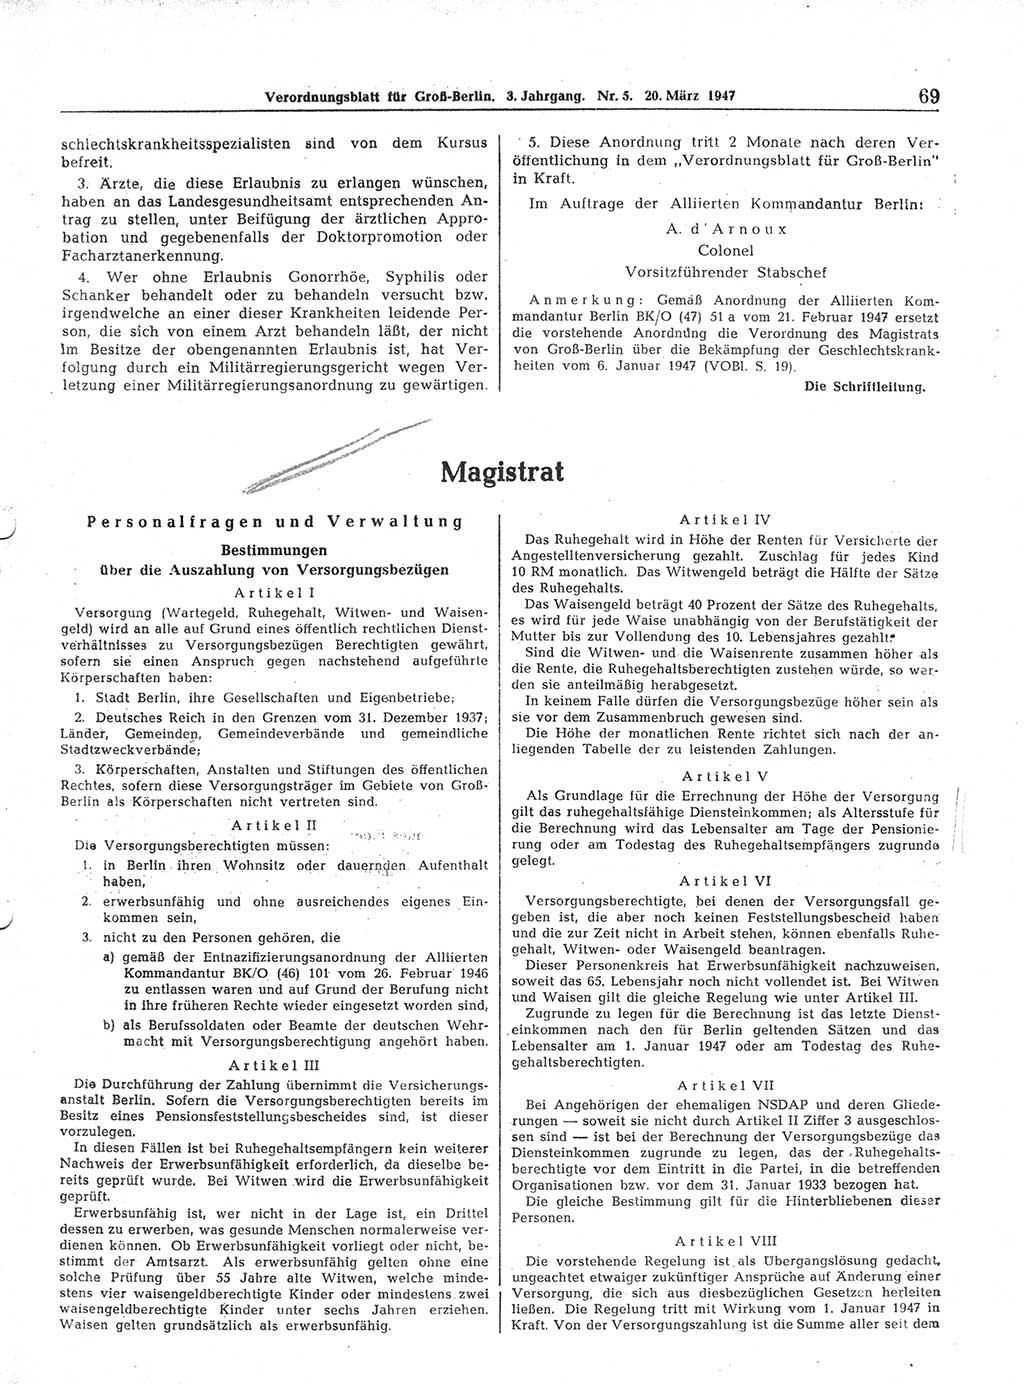 Verordnungsblatt (VOBl.) für Groß-Berlin 1947, Seite 69 (VOBl. Bln. 1947, S. 69)